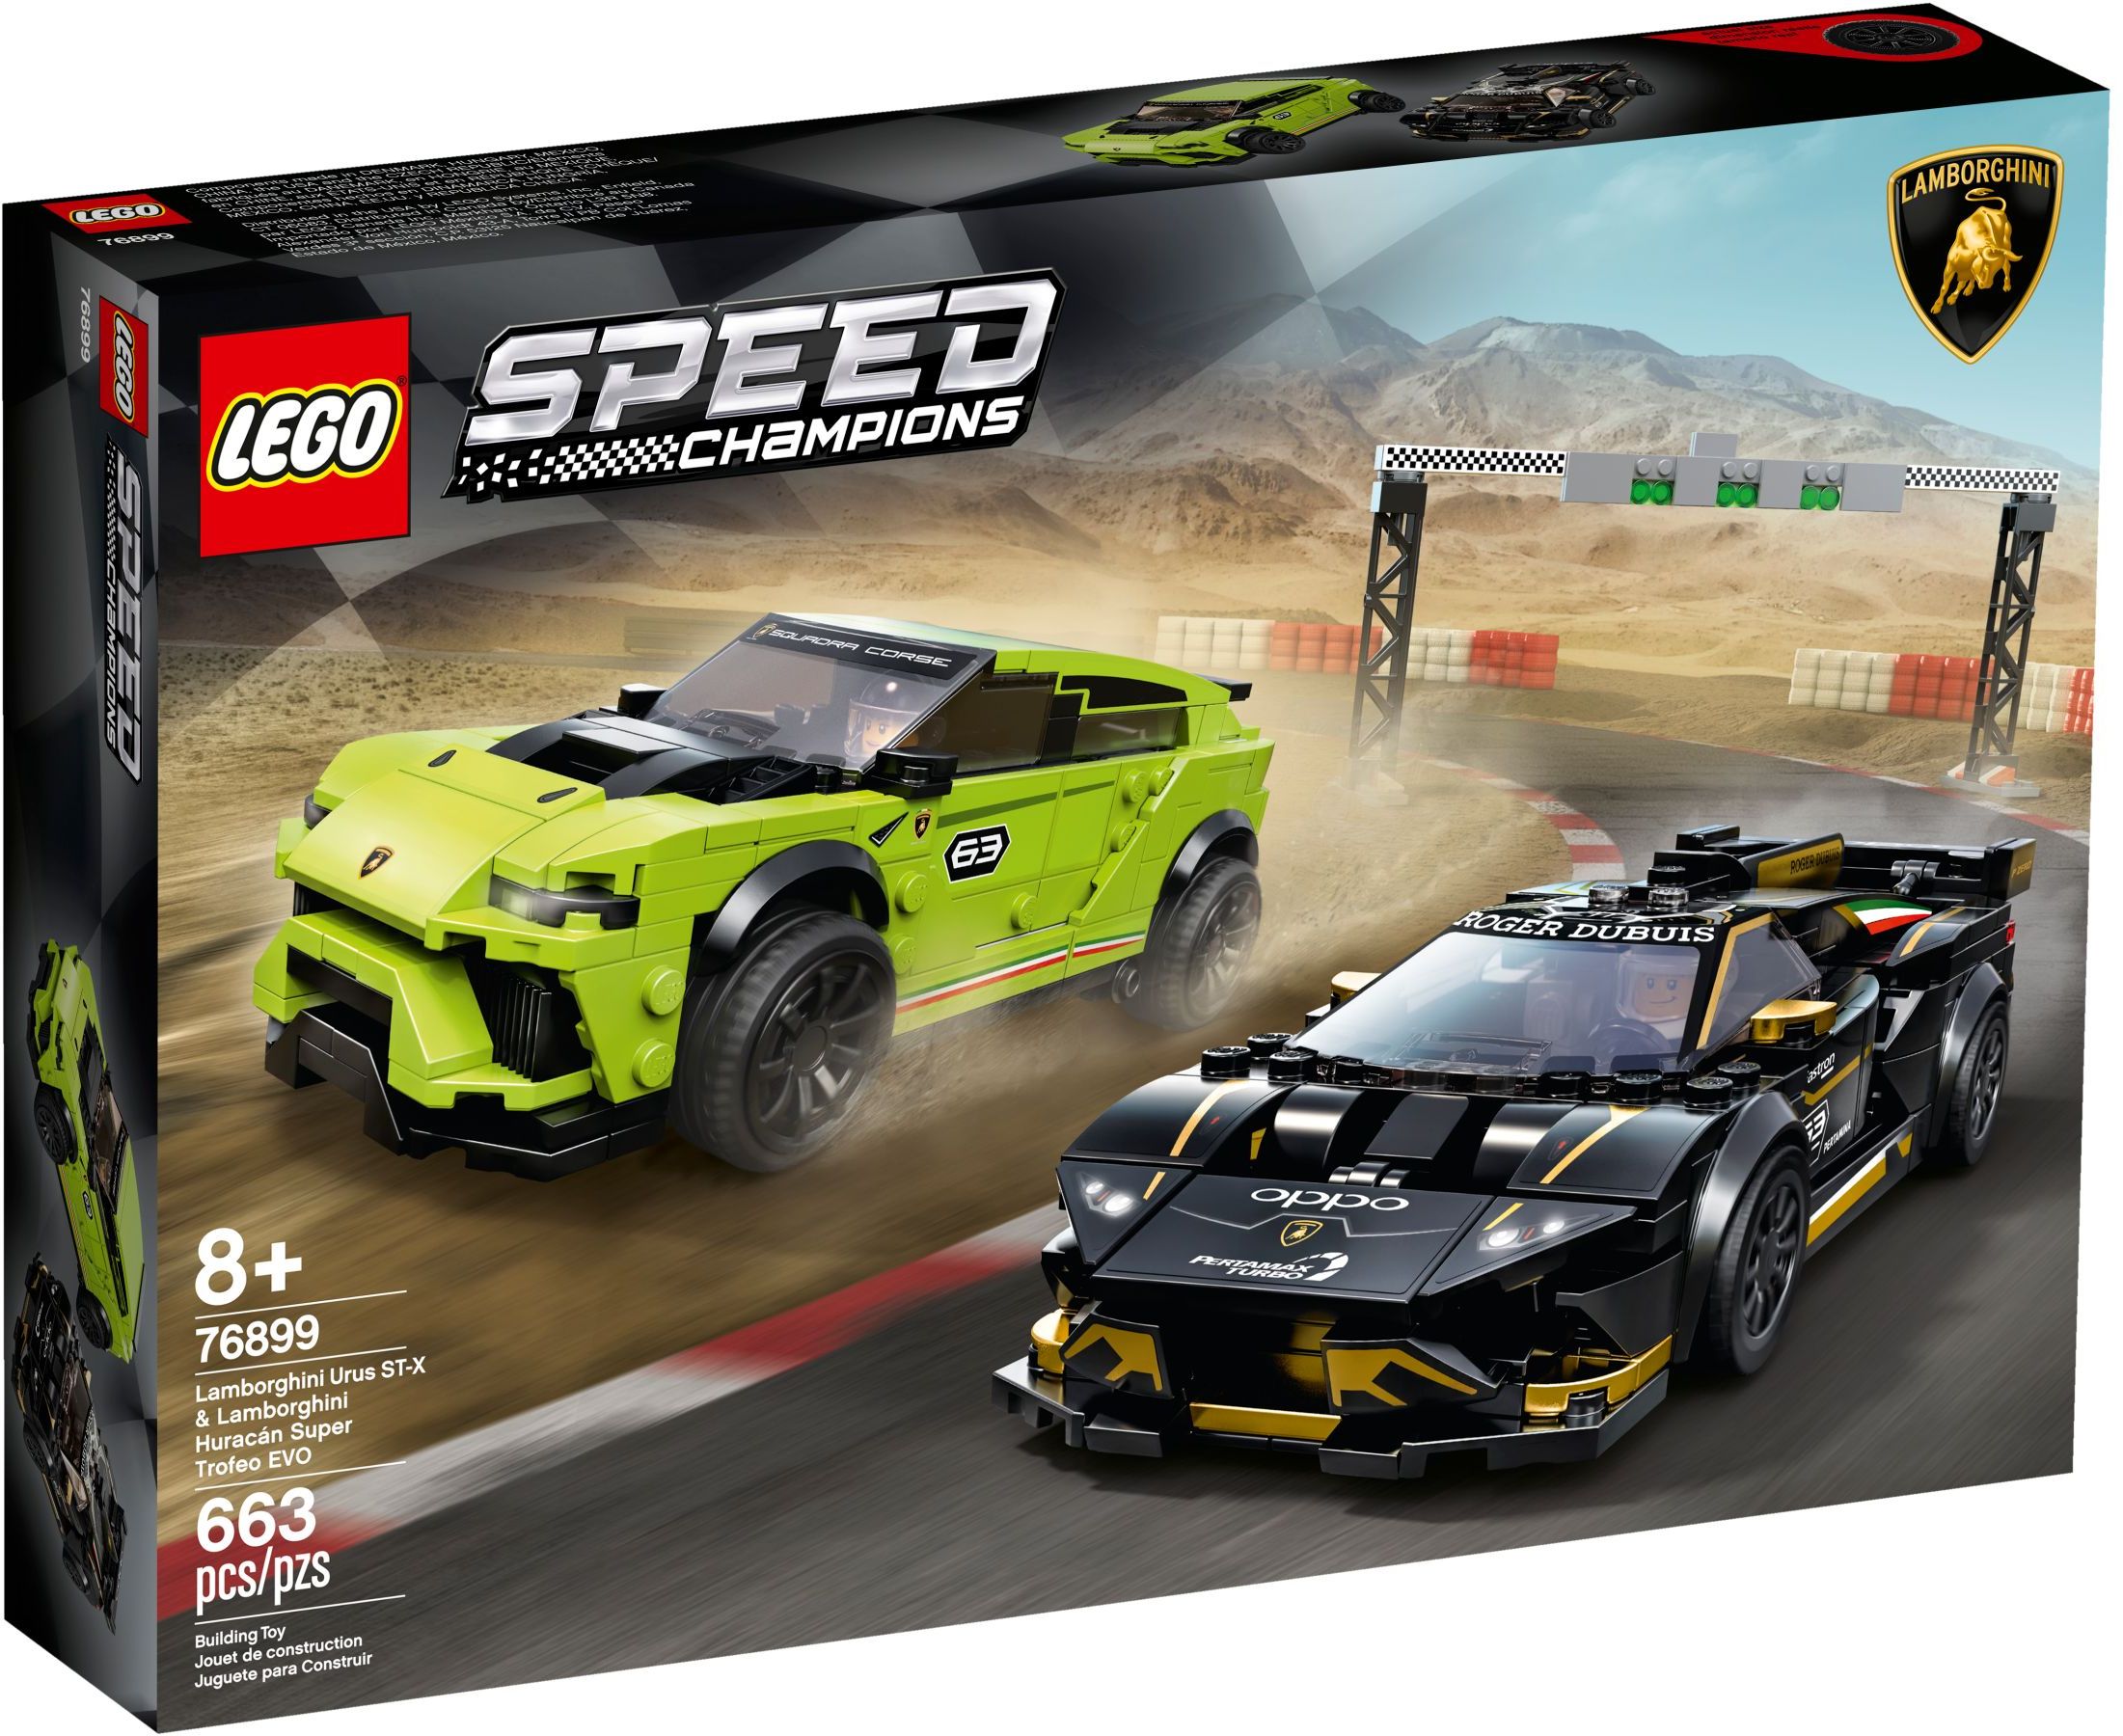 76899 LEGO Speedchampions Lamborghini Urus ST-X & Huracán Super Trofeo EVO  - Siêu xe mô hình Lamboghini 